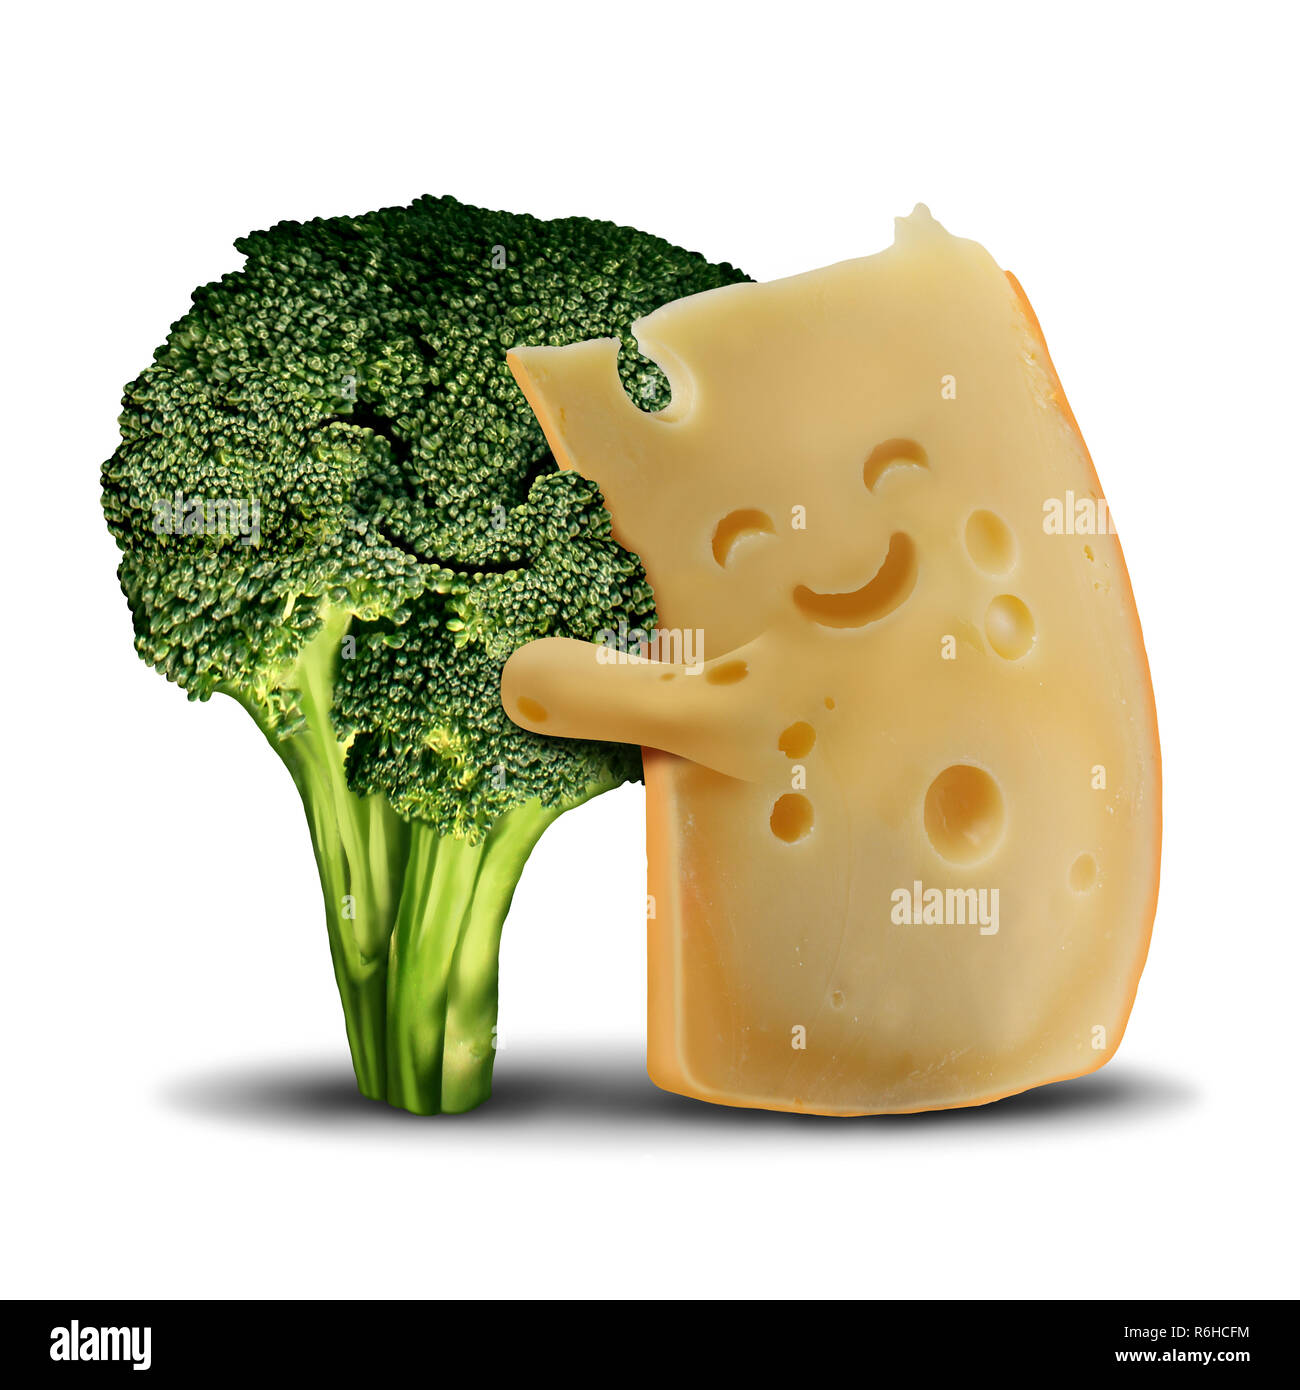 Divertente di broccoli e formaggio fun food concept come carino sorridente happy snack ingredienti e con un sano verde carattere vegetale. Foto Stock